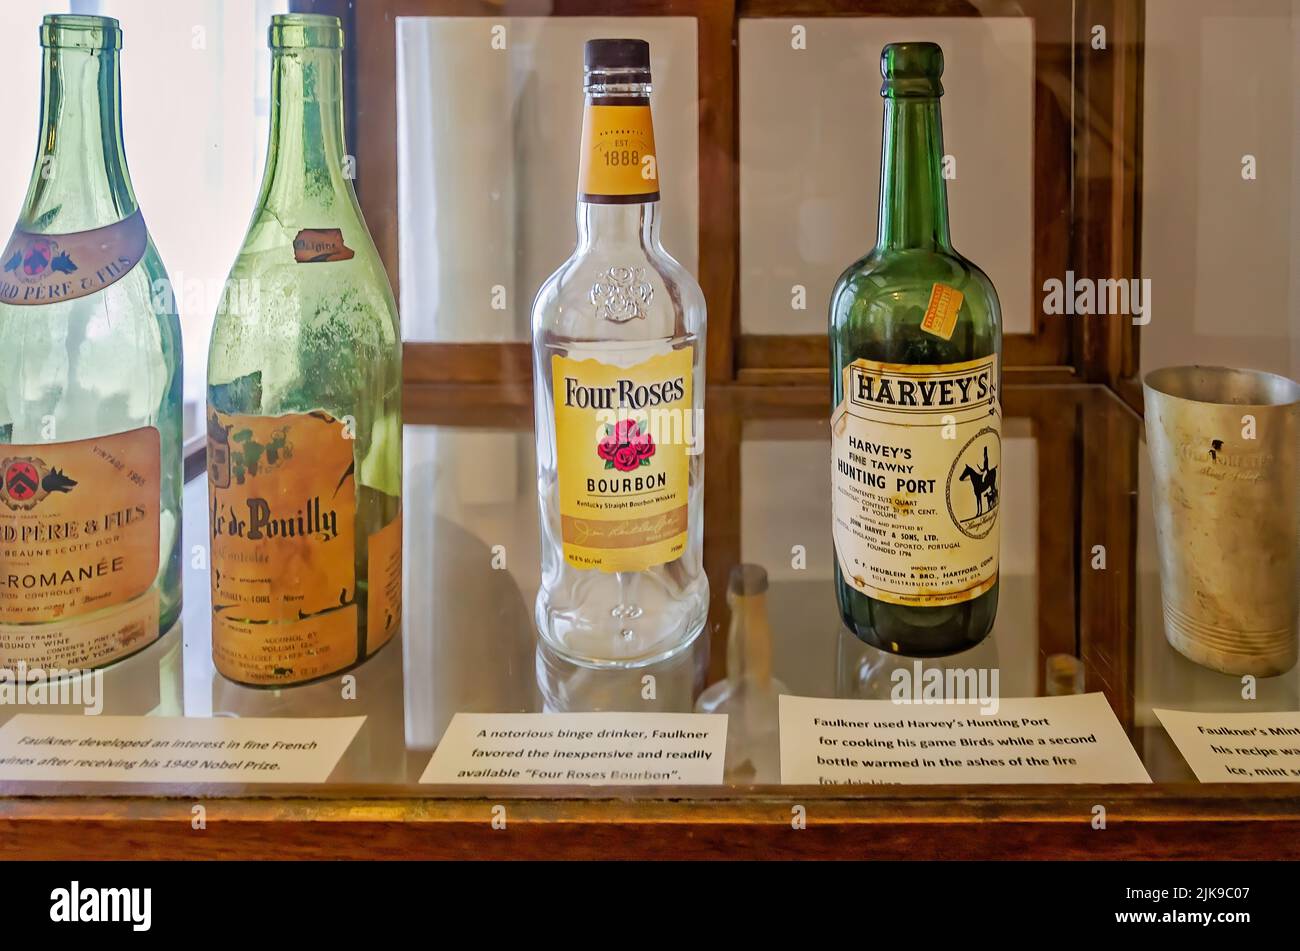 Bottiglie di liquore e una tazza di julep di menta sono esposti in una vetrata a Rowan Oak, la casa dello scrittore William Faulkner a Oxford, Mississippi. Foto Stock